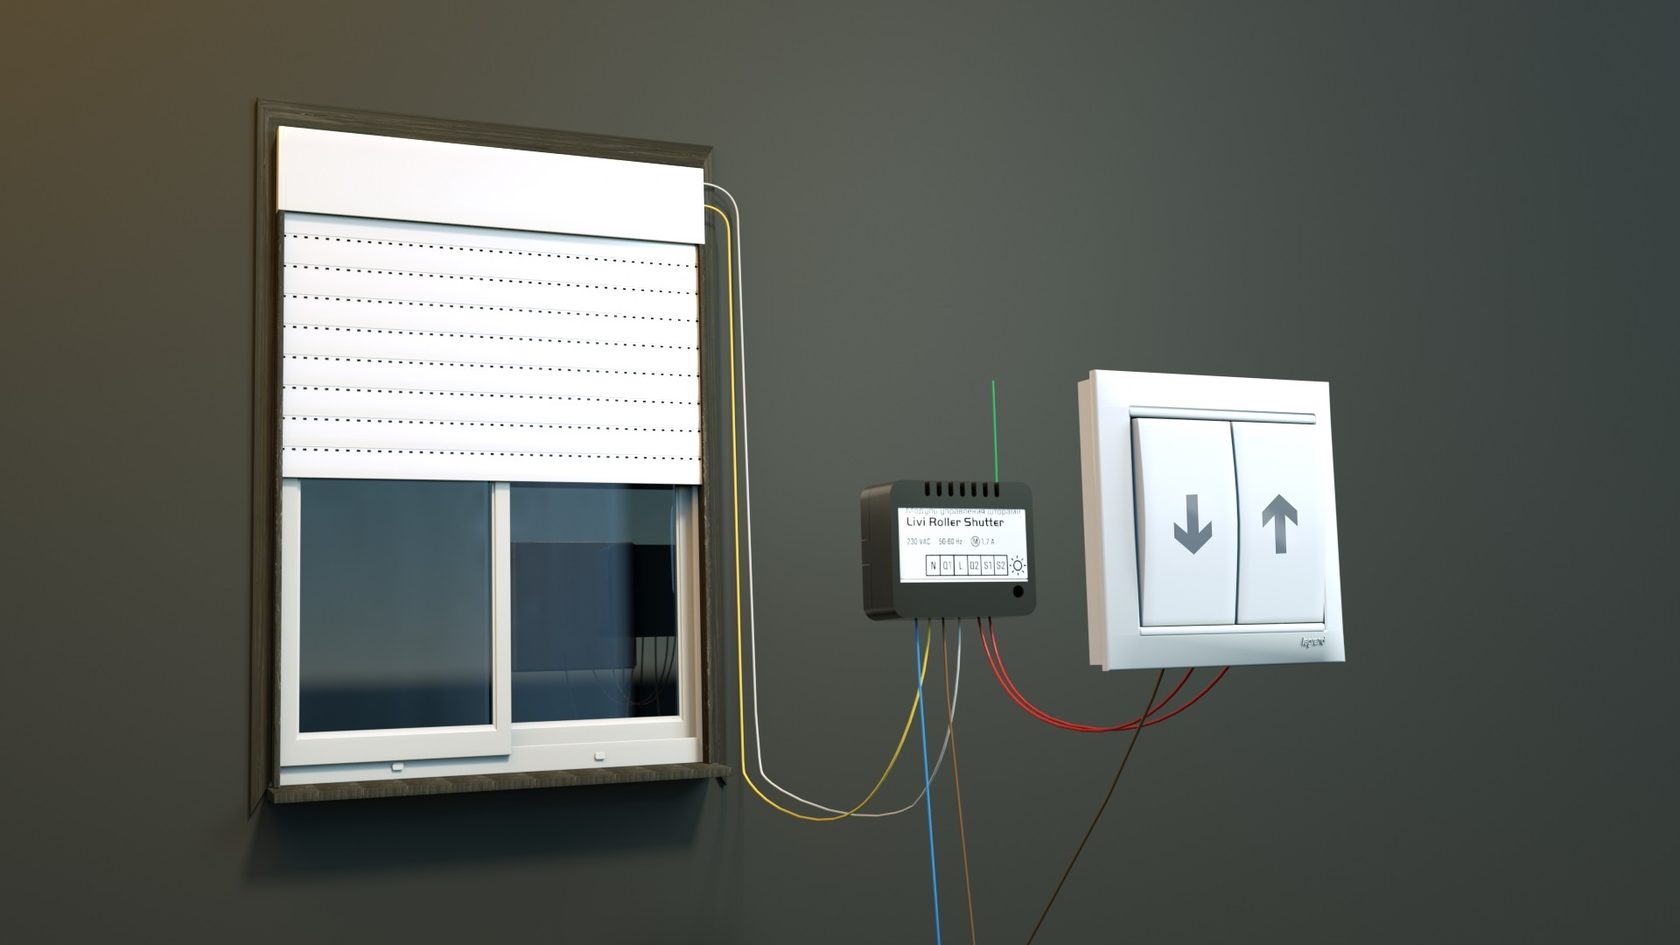 Livi Roller Shutter управляет однофазными асинхронными электромоторами штор, секционных ворот, рольставней, жалюзи, роллетных систем